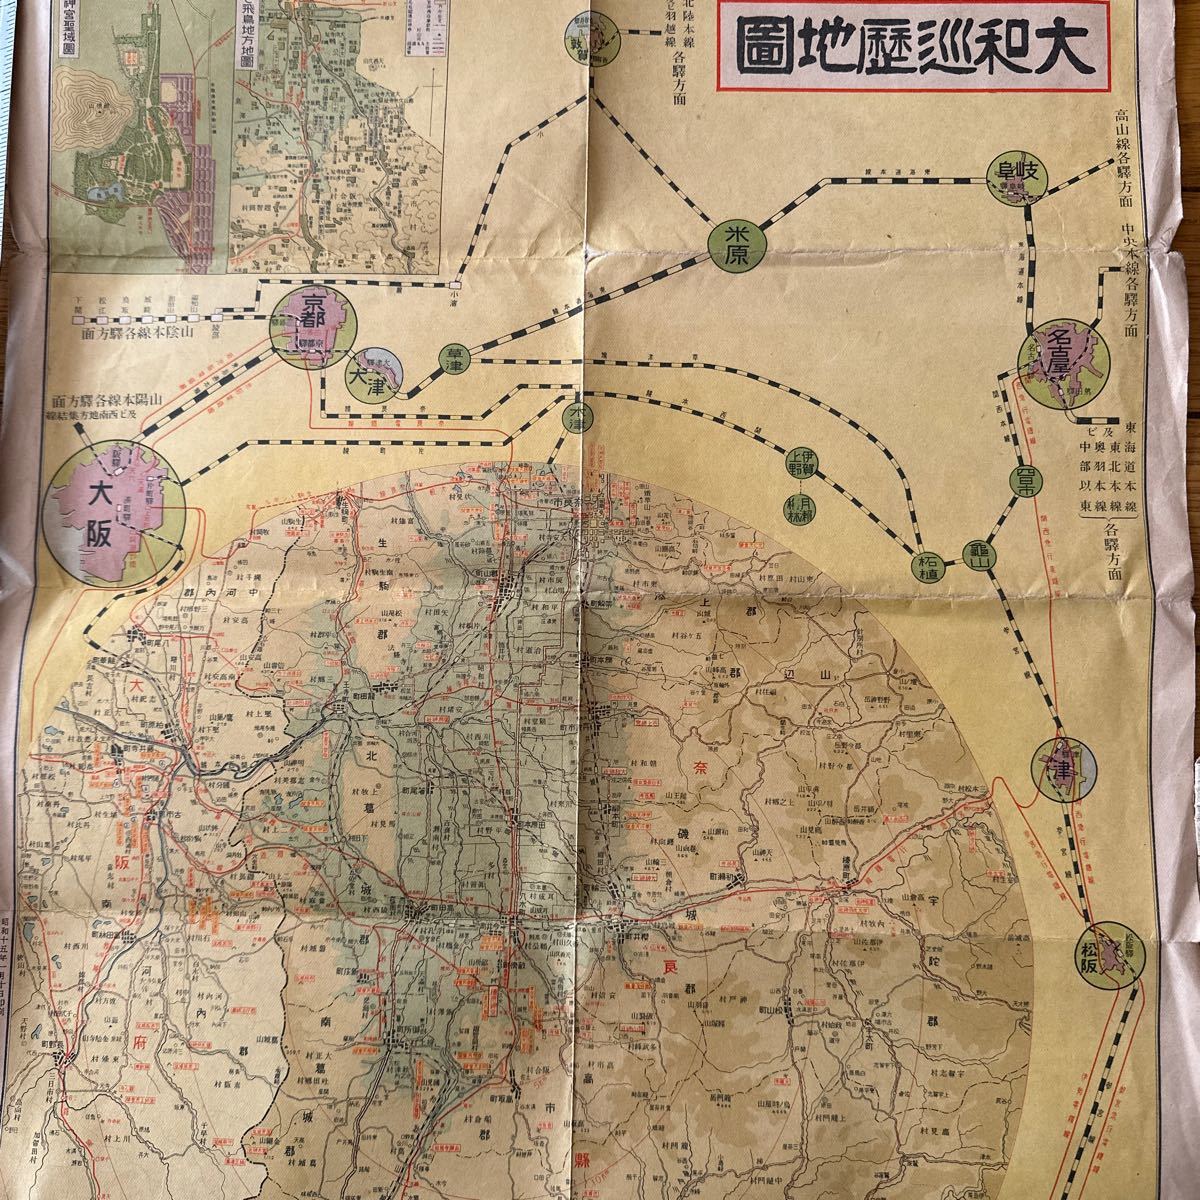 192　奈良市街図　大和巡歴地図　昭和15年　古地図　7500分の1　奈良県教育会編集_画像3